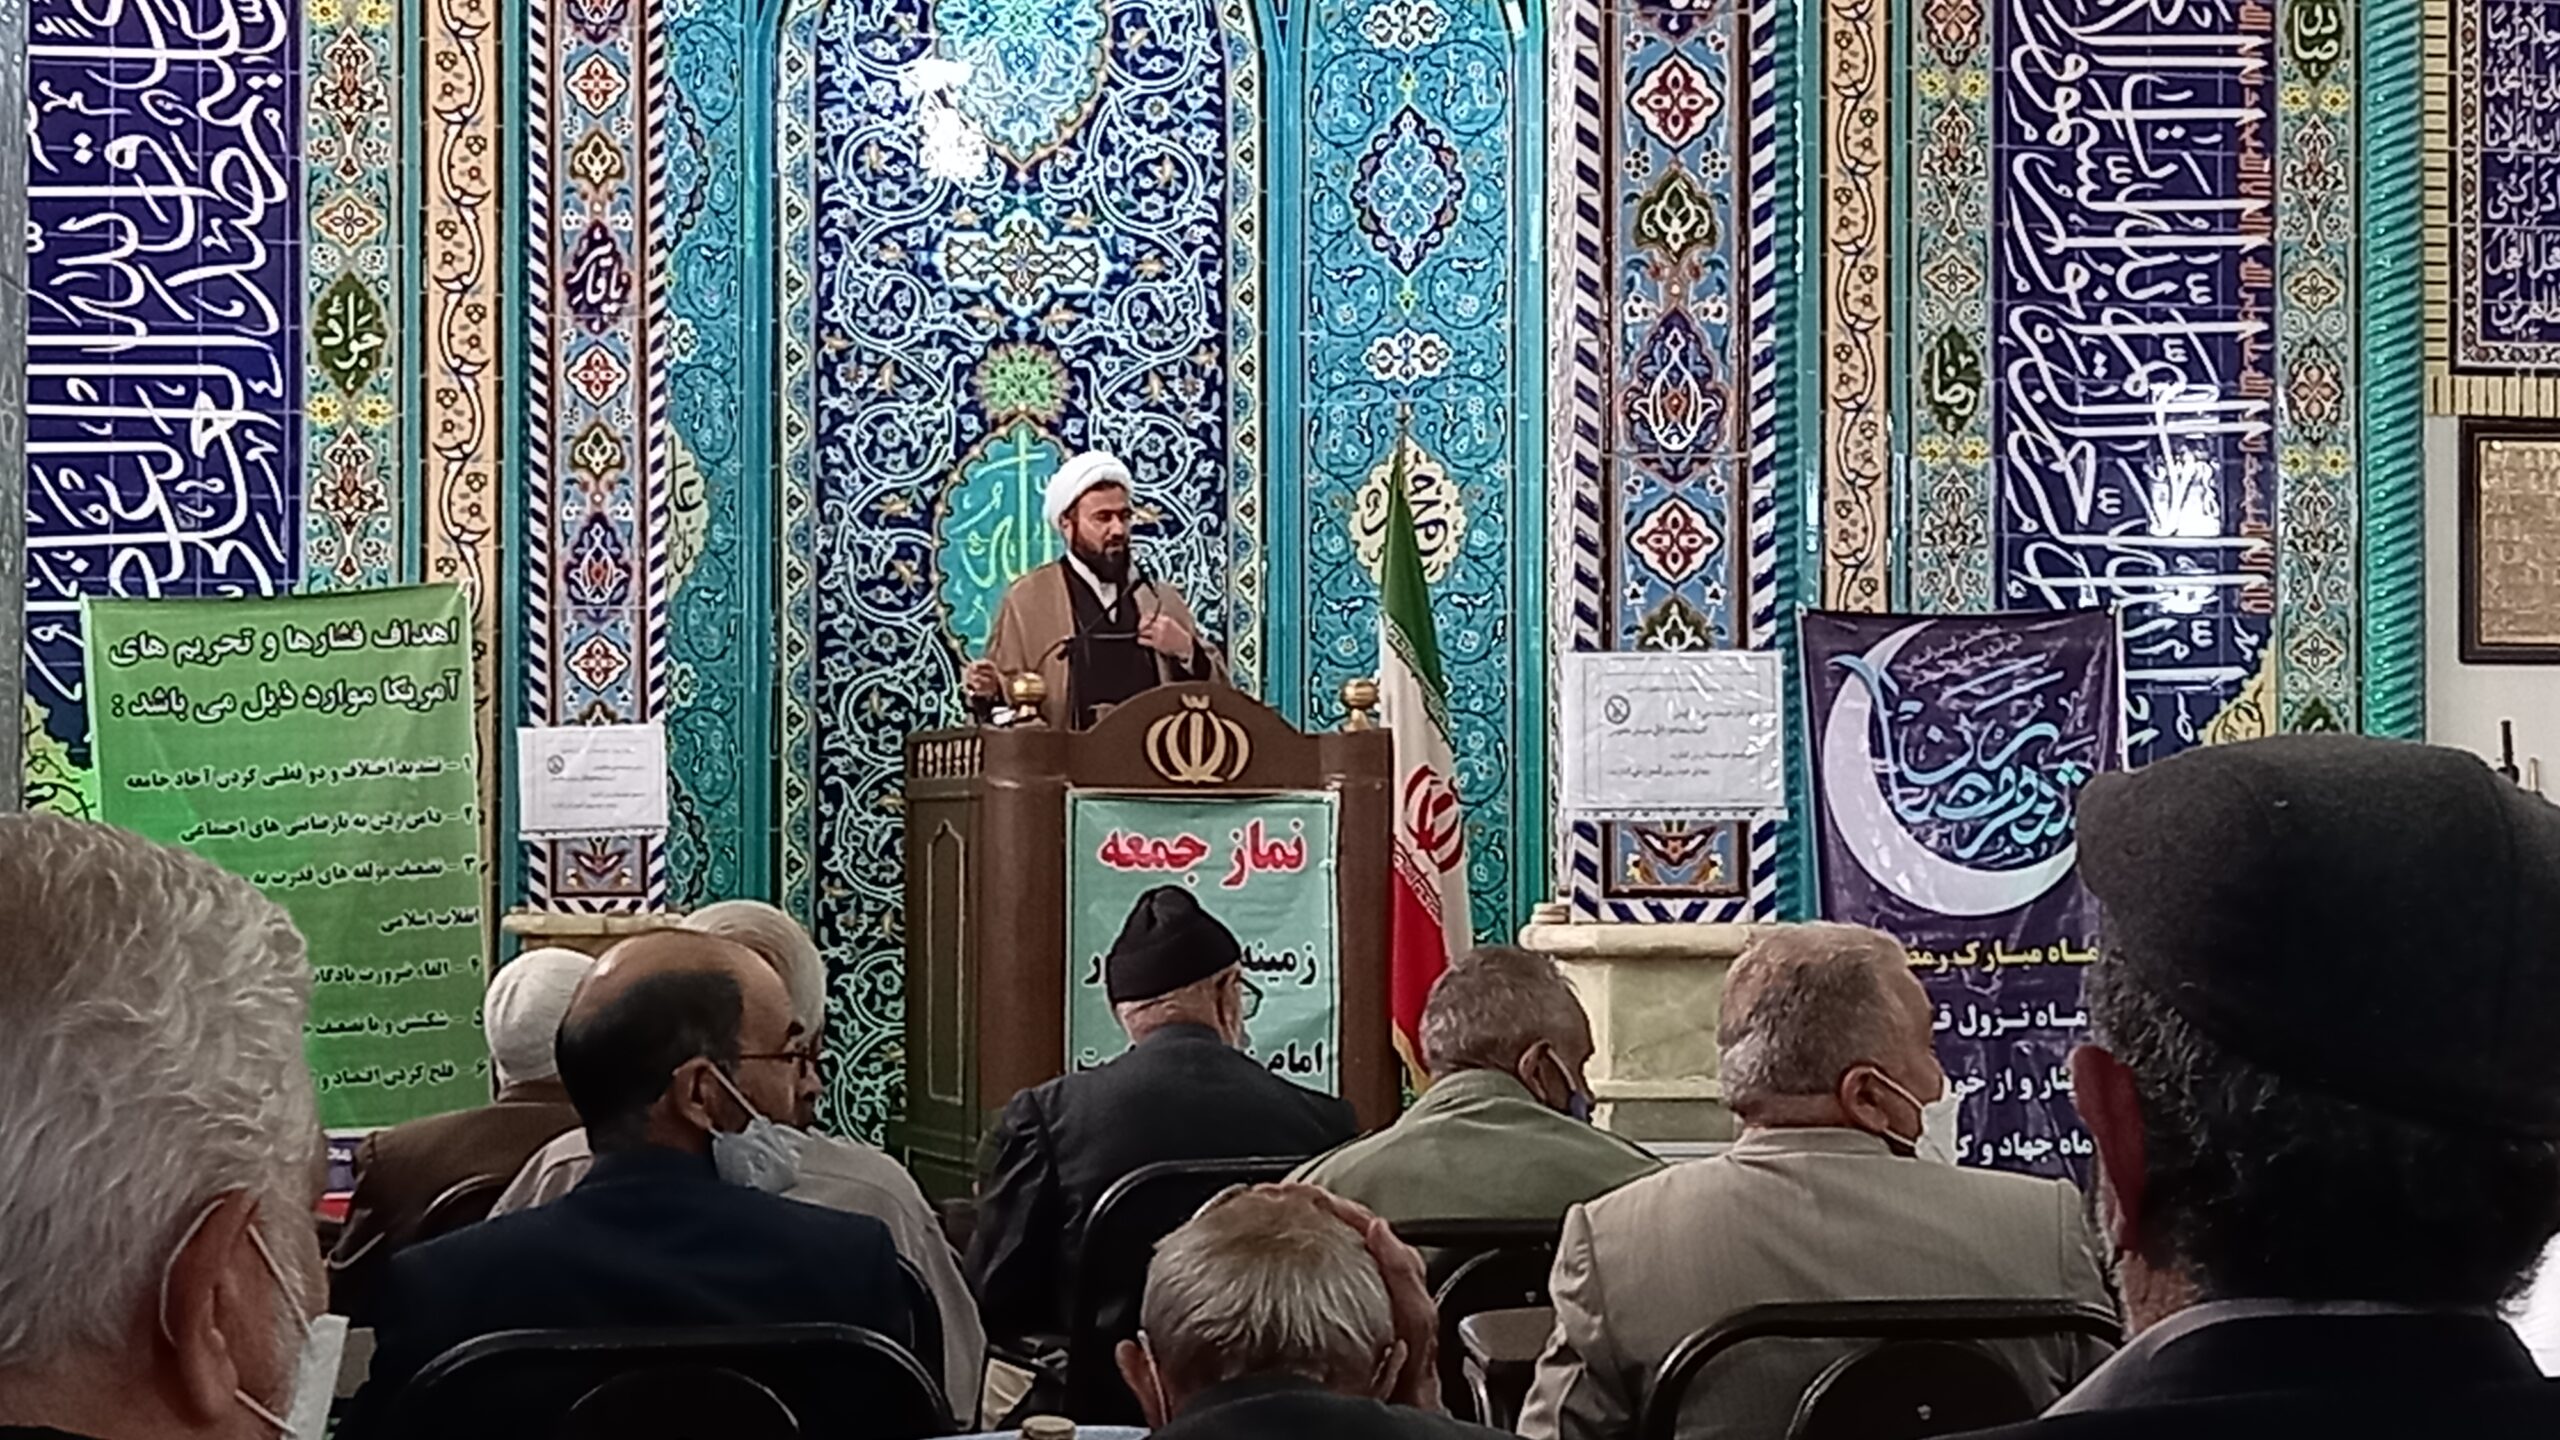 مسجد باید محل سازماندهی و تربیت نیروهای انقلابی، خدمات اجتماعی و گره گشایی از مشکلات مردم باشد